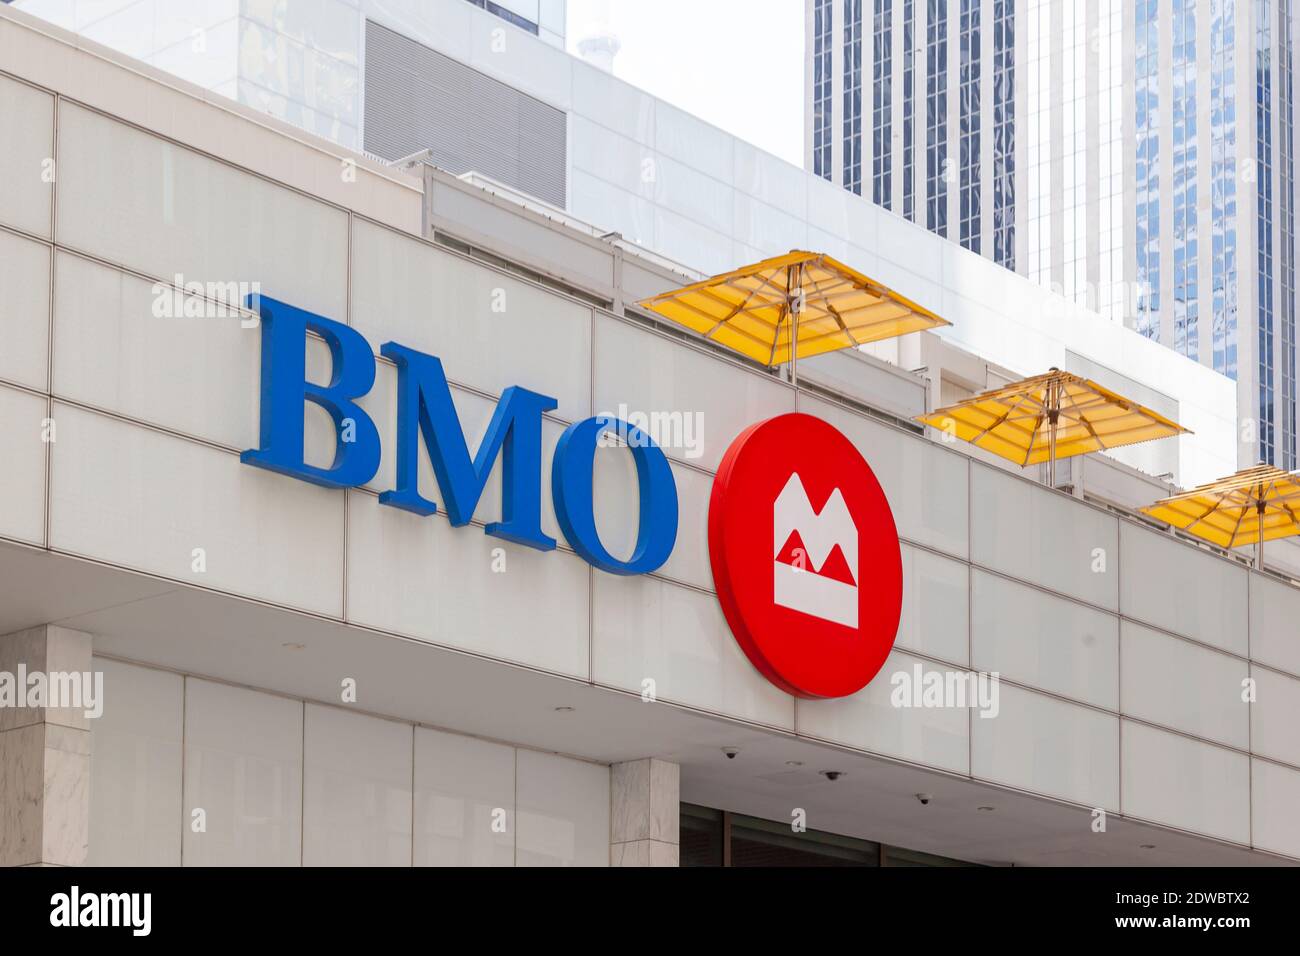 Toronto, Canadá - 16 de mayo de 2020: BMO (Banco de Montreal) muestra en Toronto, Canadá. Foto de stock